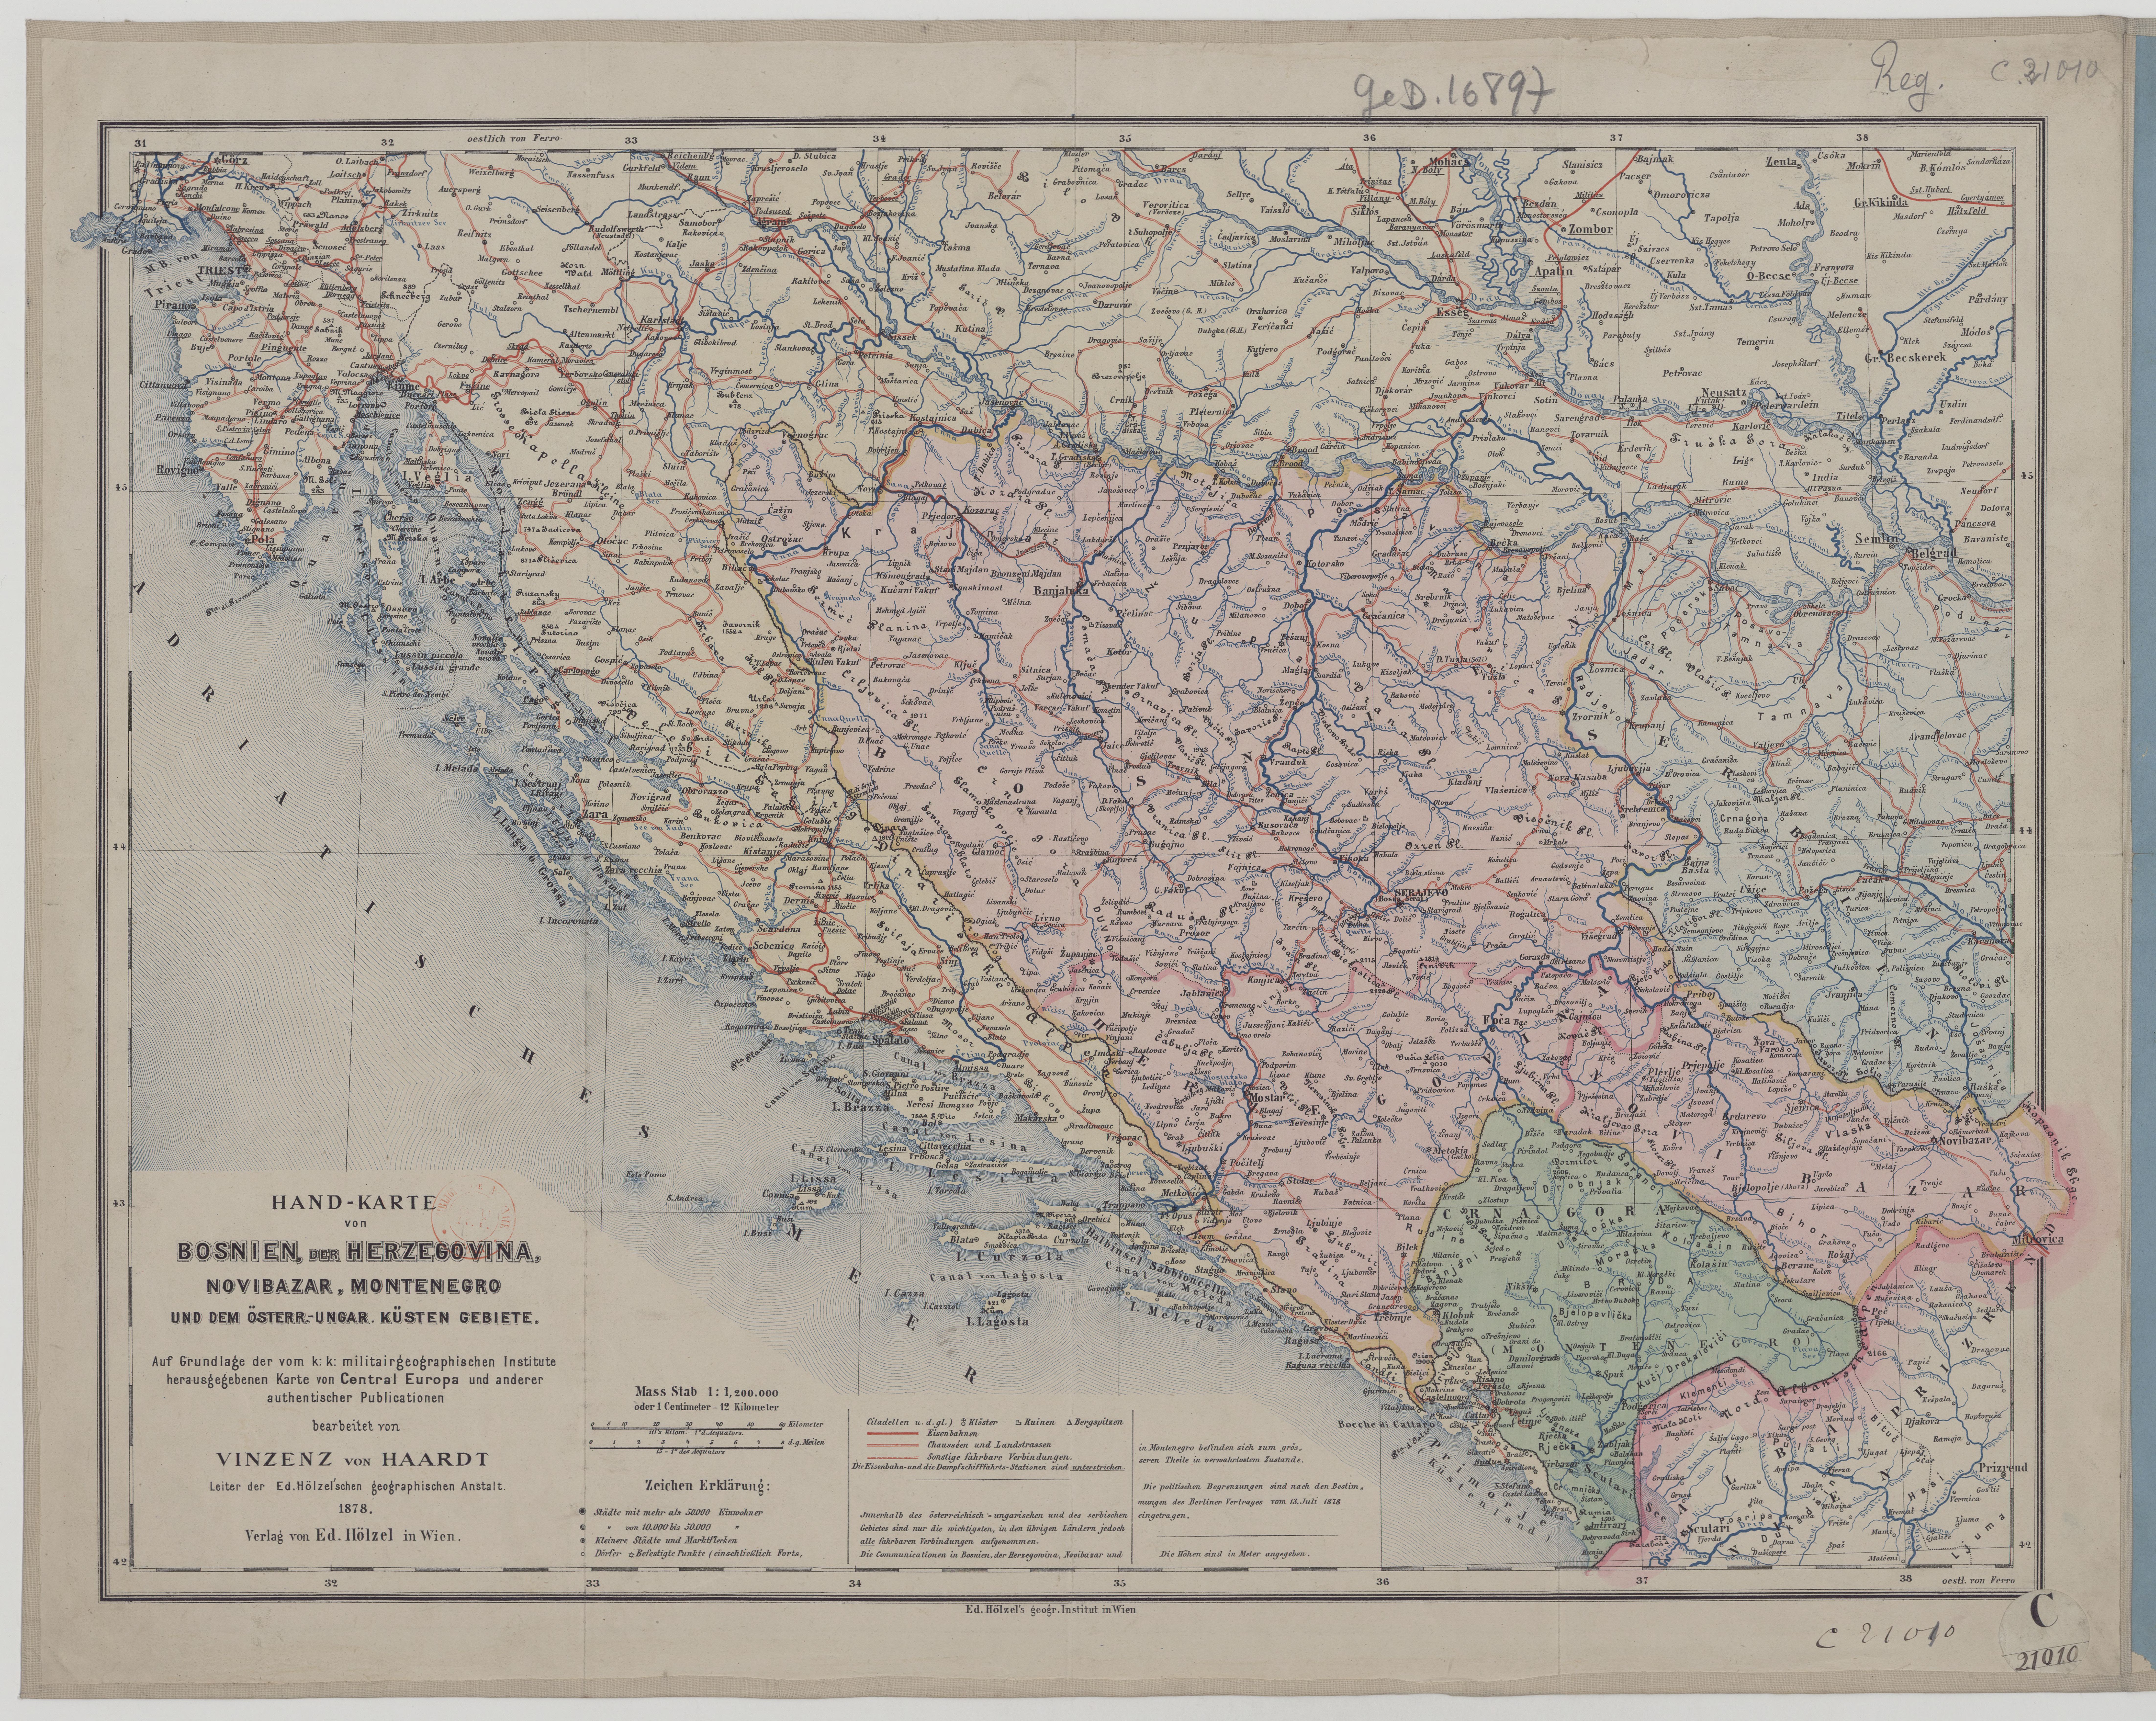 https://upload.wikimedia.org/wikipedia/commons/4/49/1878_-_Hand-Karte_von_Bosnien%2C_der_Herzegovina%2C_Novibazar%2C_Montenegro_und_dem_%C3%B6sterreichisch-ungarischen_K%C3%BCsten_Gebiete.jpg